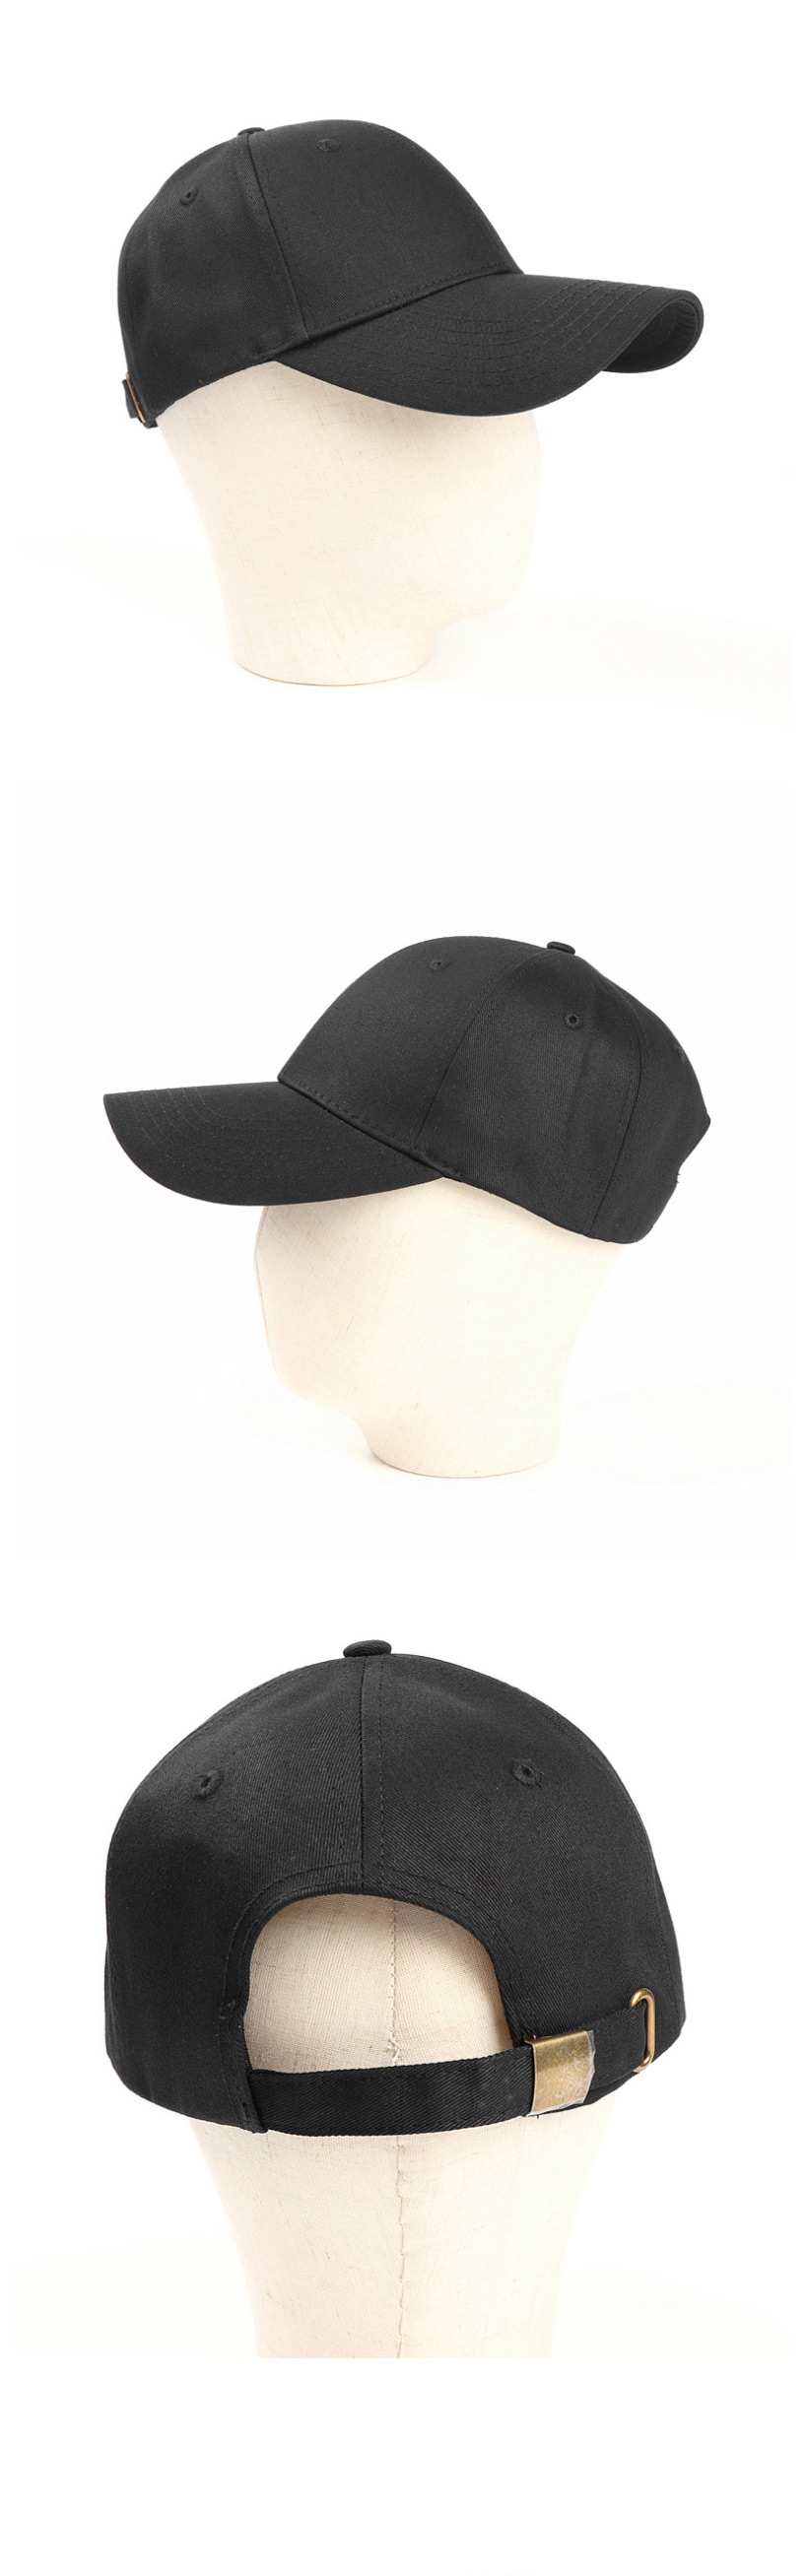 Fashion Dark Gray Cotton Hard Top And Long Brim Baseball Cap,Baseball Caps